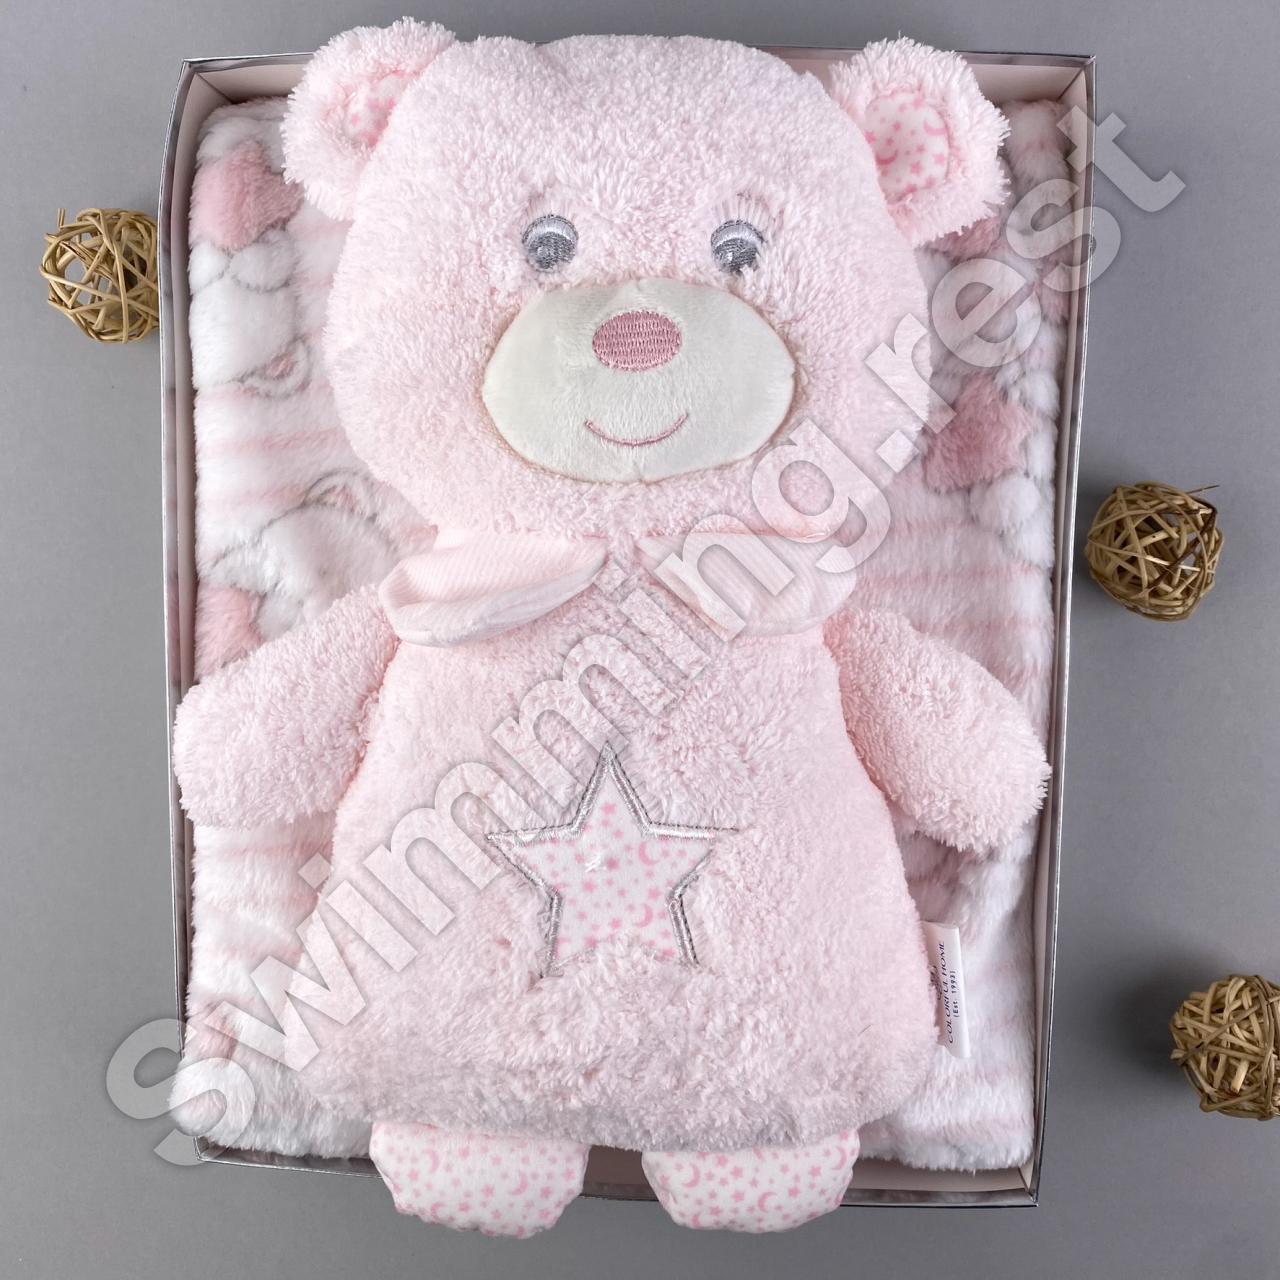 Іграшка + плед  подарунковий набір для дітей Рожевий ведмедик